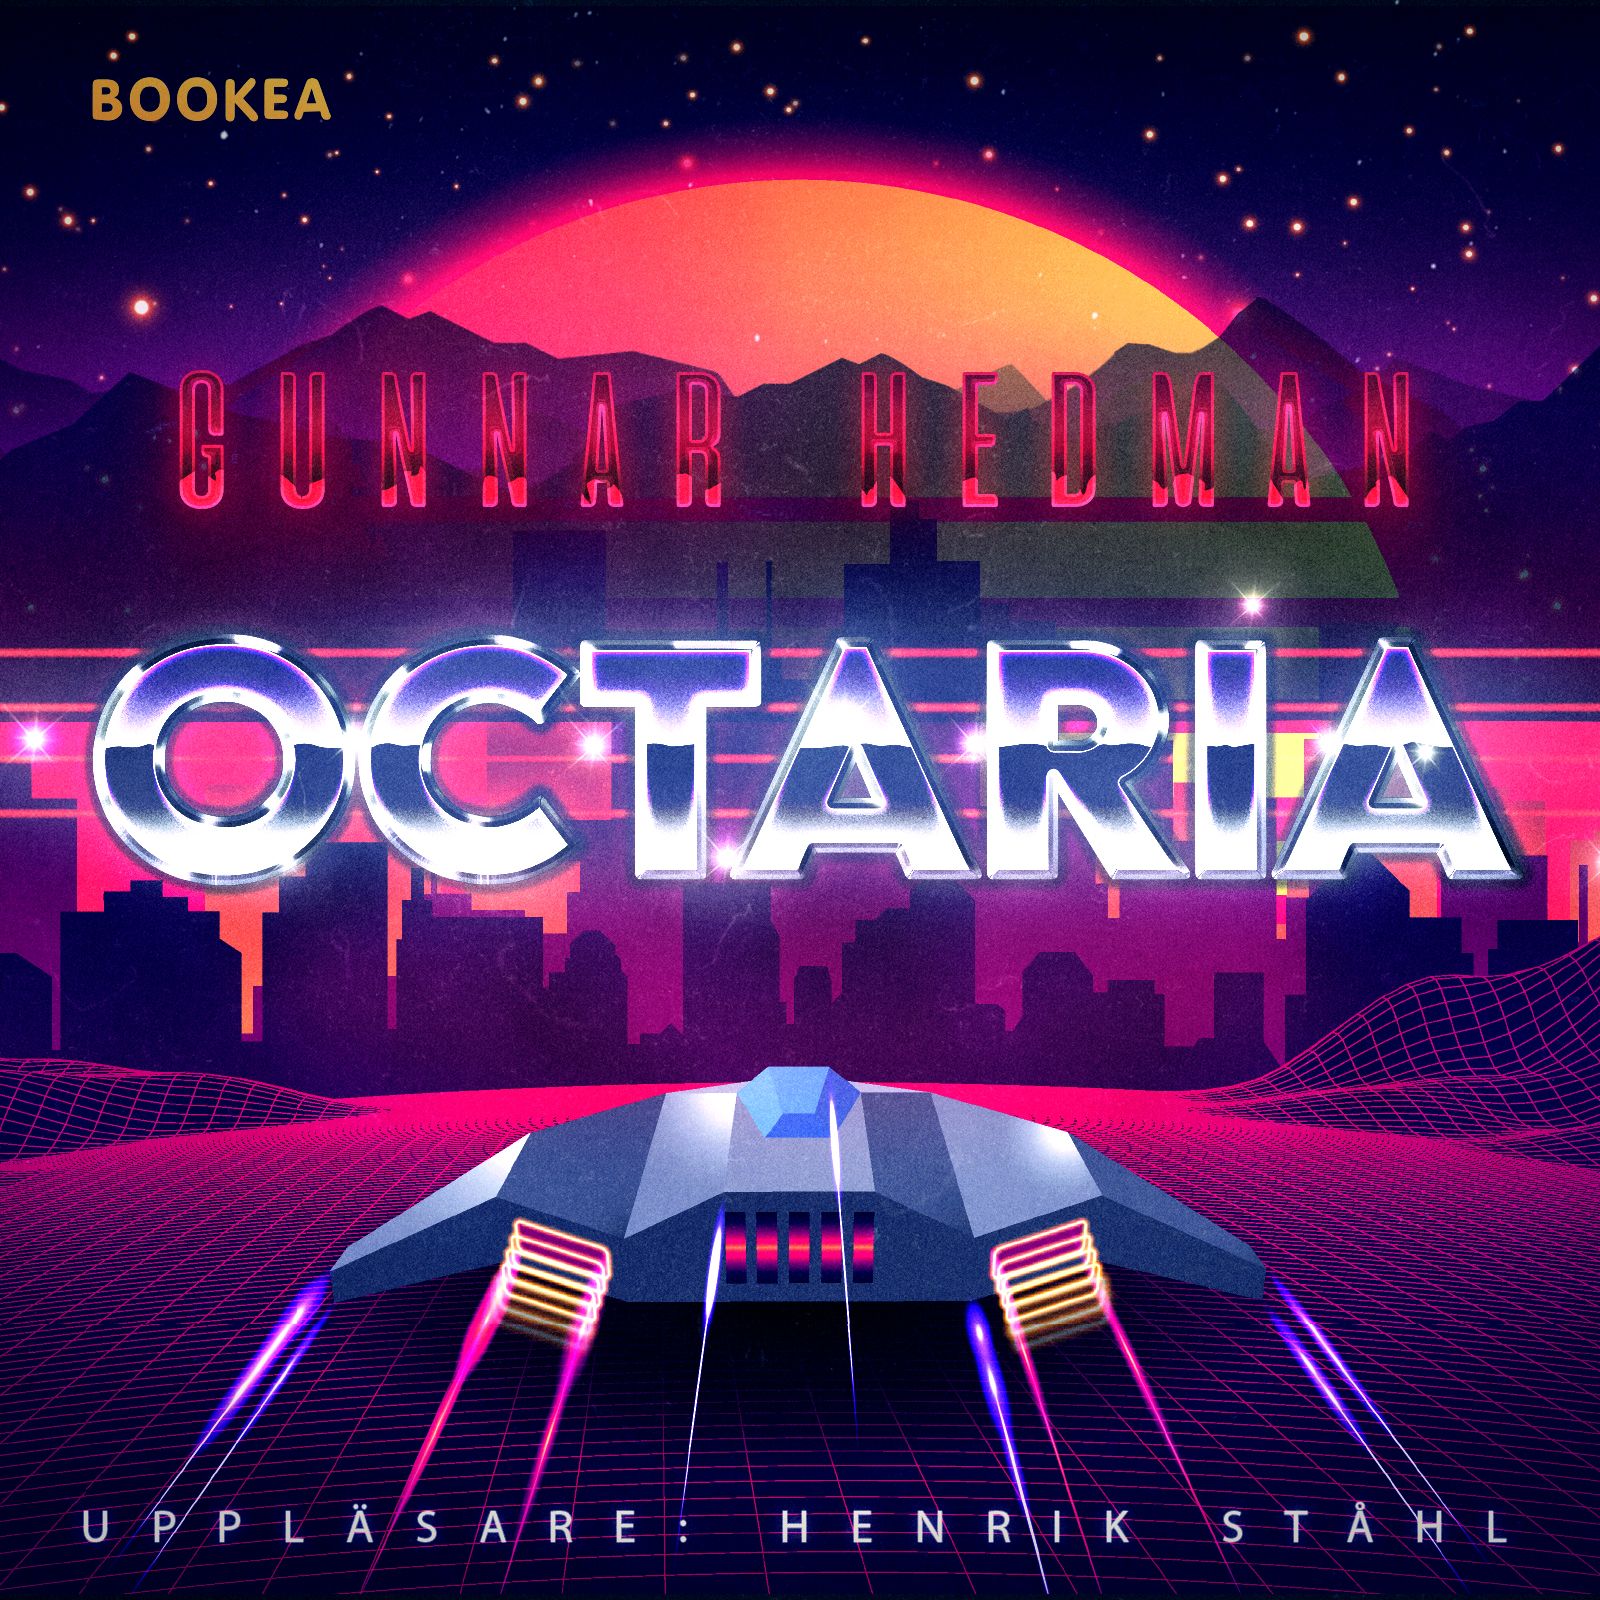 Octaria, ljudbok av Gunnar Hedman